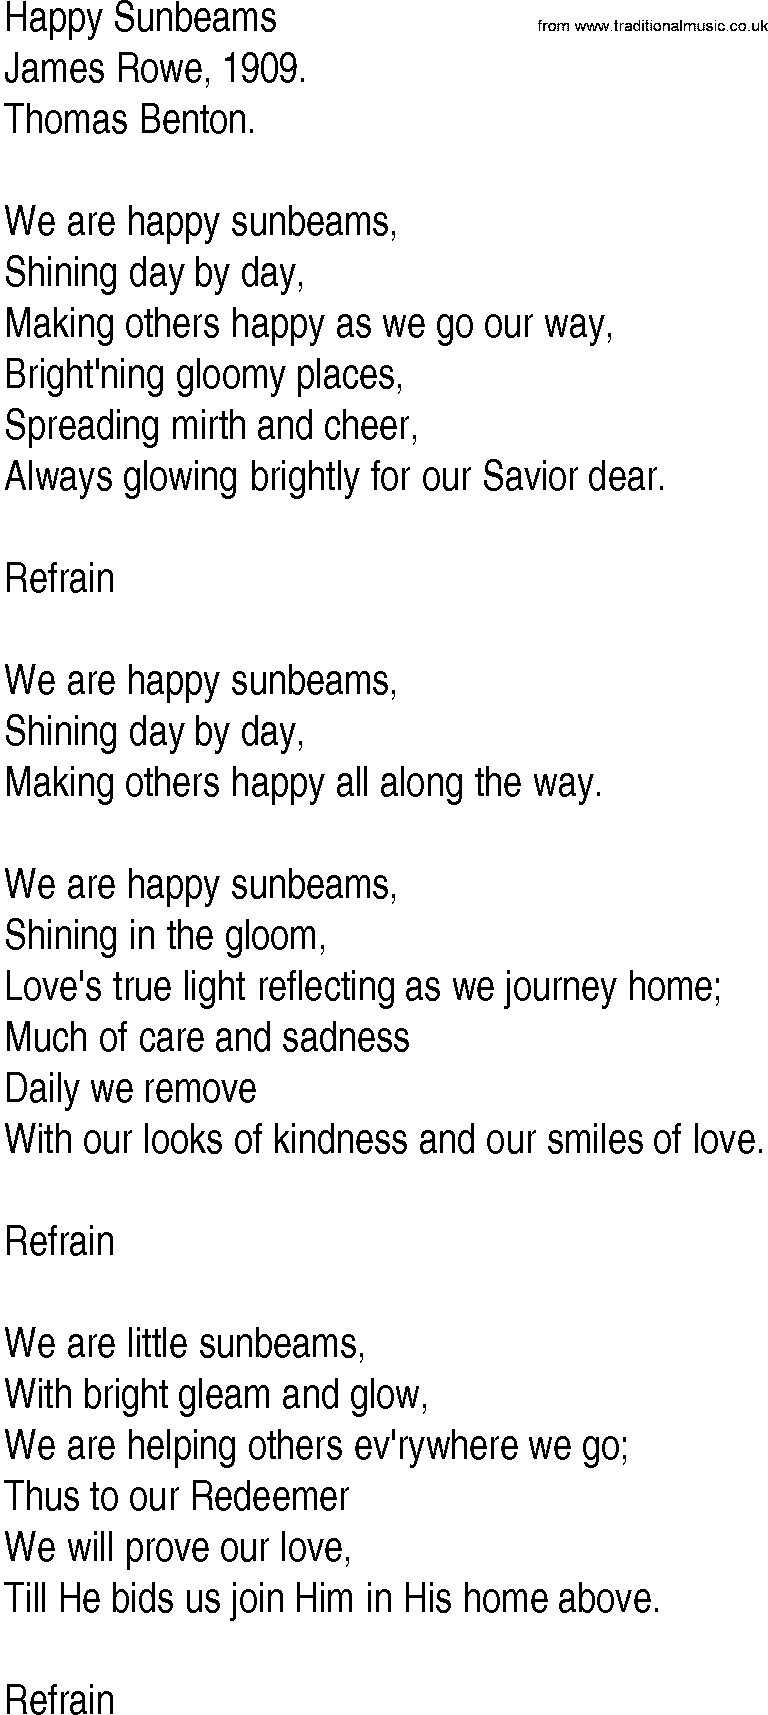 Hymn and Gospel Song: Happy Sunbeams by James Rowe lyrics